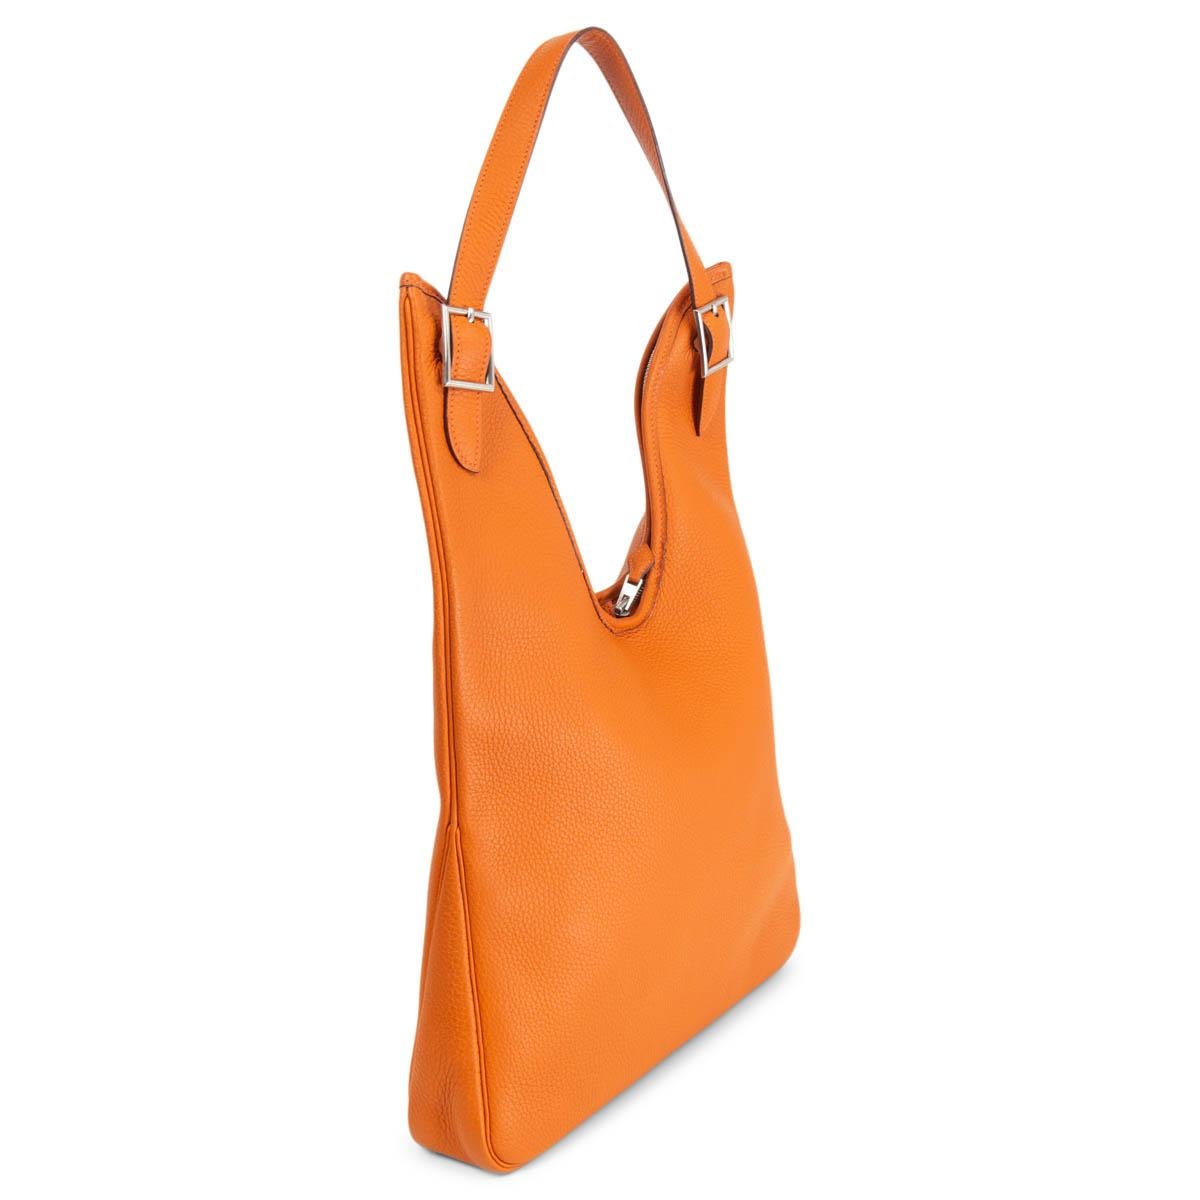 100% authentique Hermès Massai PM hobo en cuir Taurillon Clemence orange et accessoires Palladium. Il s'ouvre par une fermeture à glissière à double sens sur le dessus et est doublé d'une toile classique Hermès blanc cassé, avec une poche zippée au